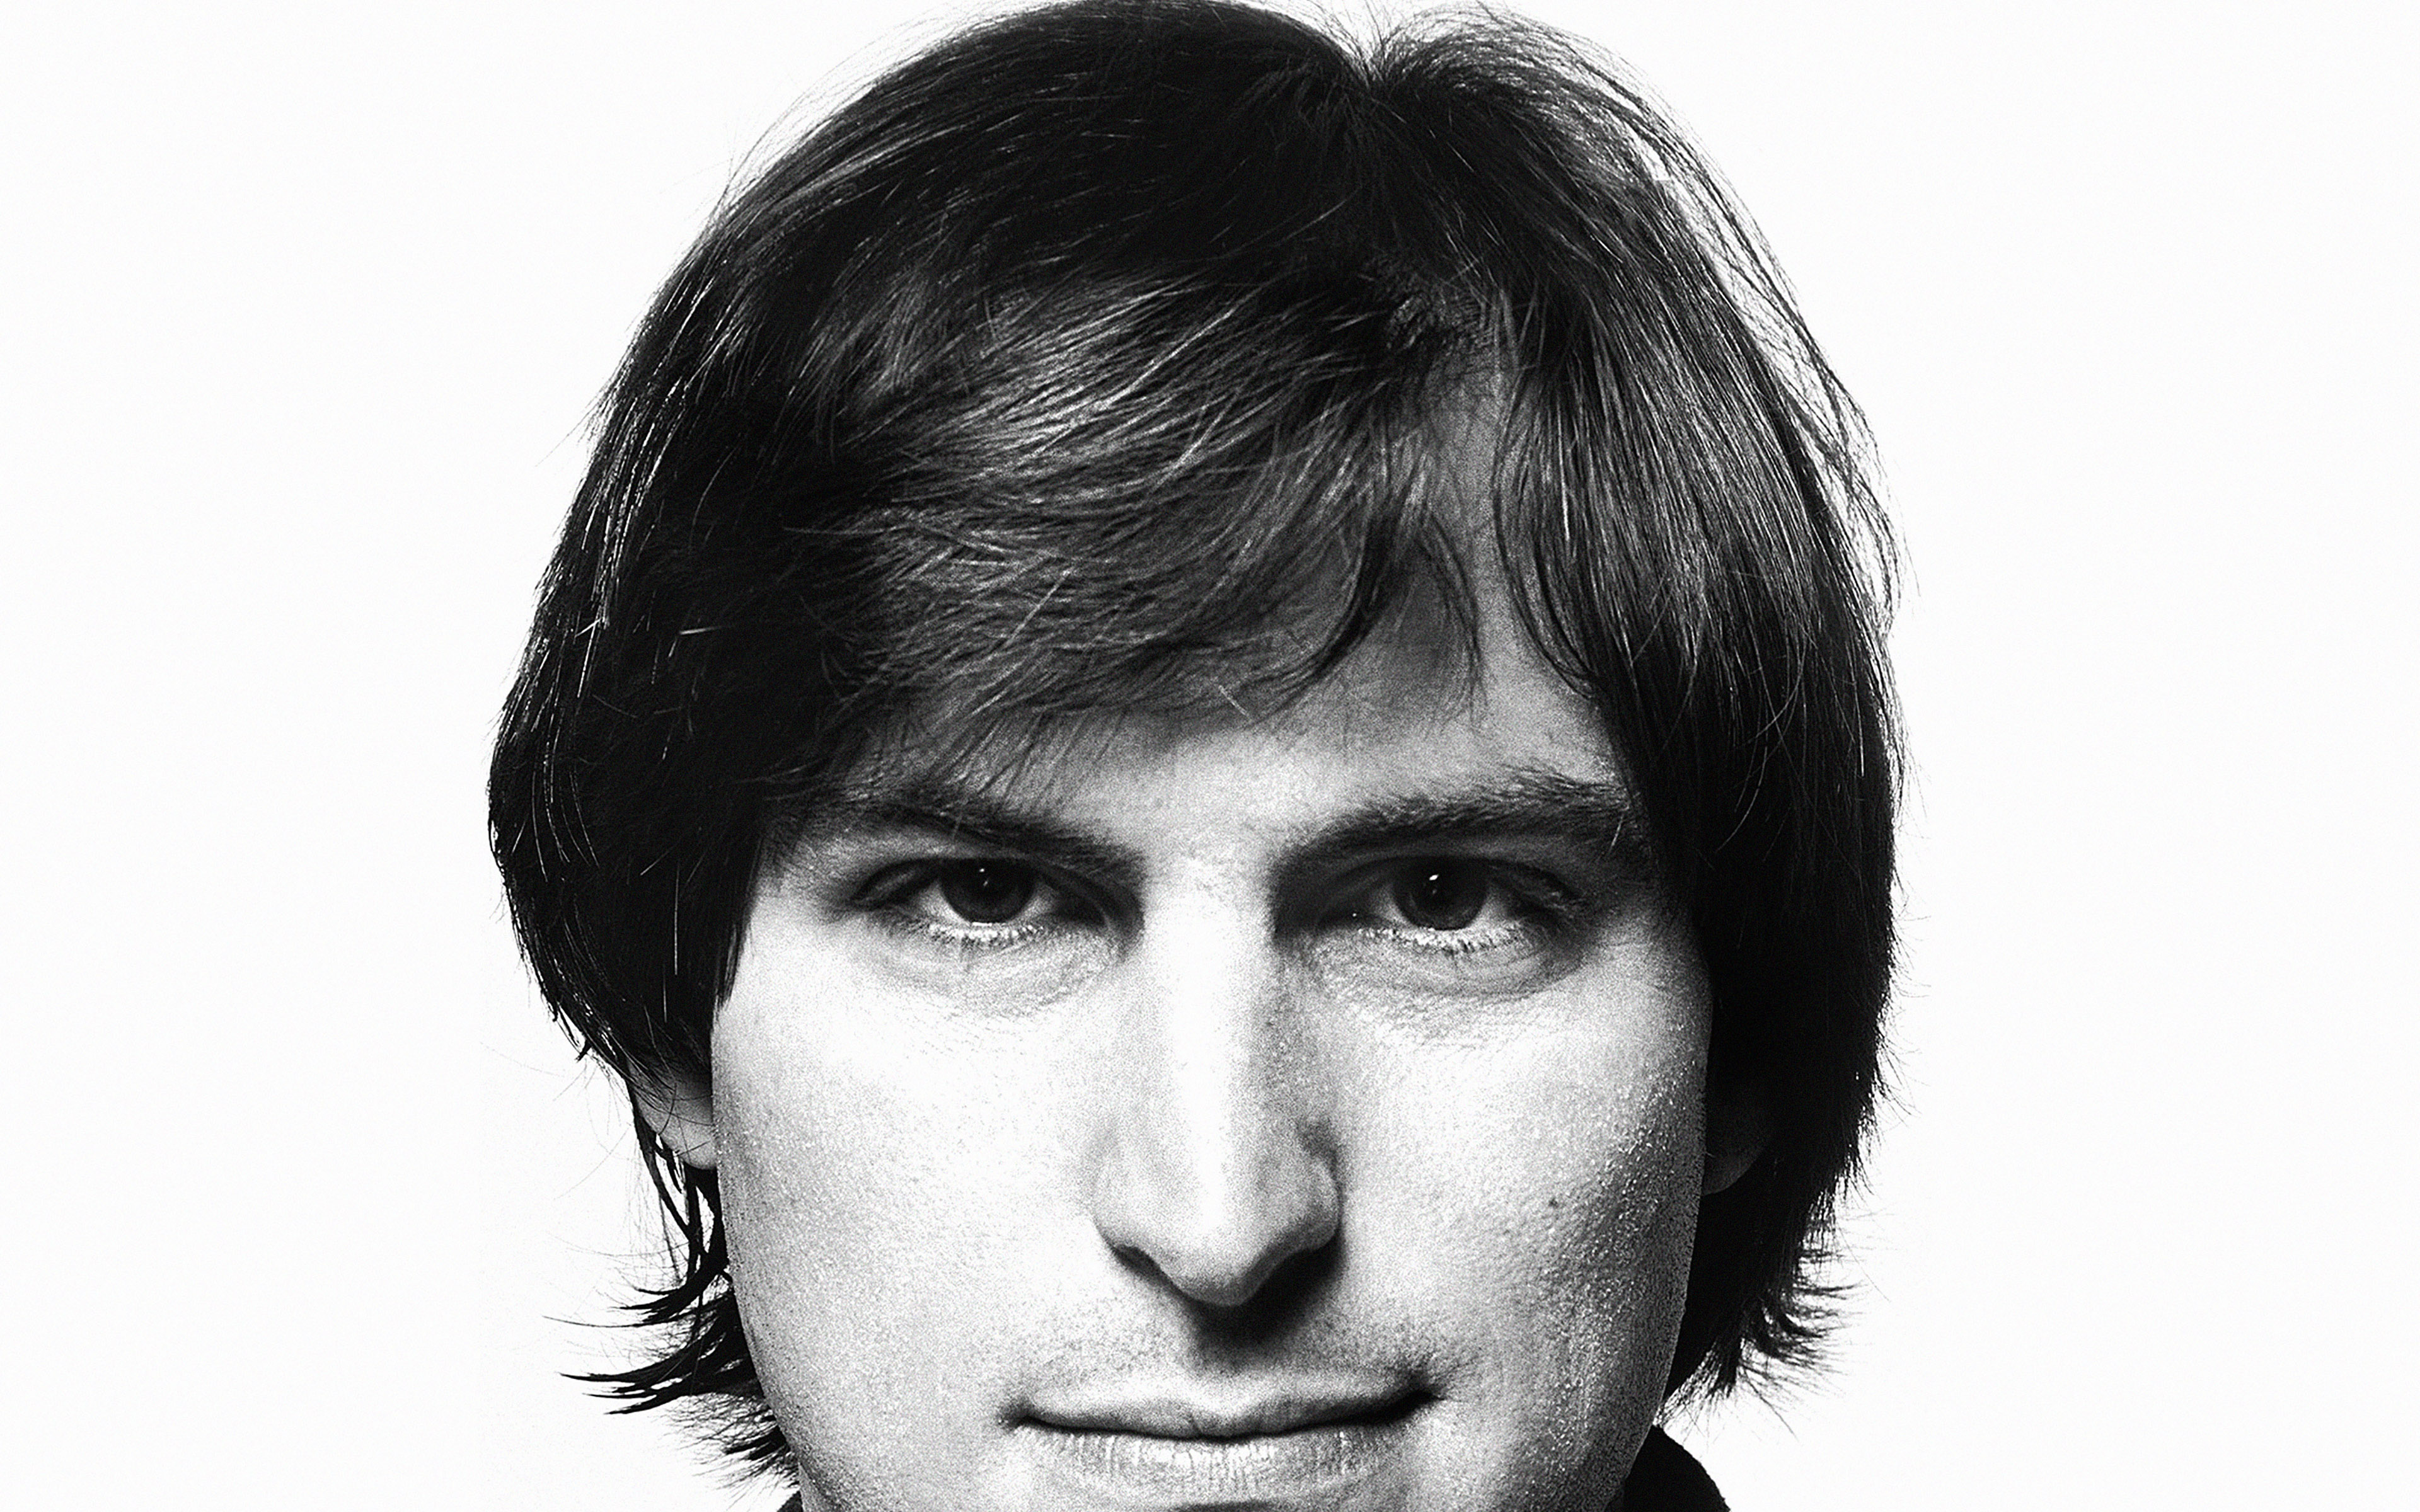 3840 X - Iphone 7 Steve Jobs , HD Wallpaper & Backgrounds